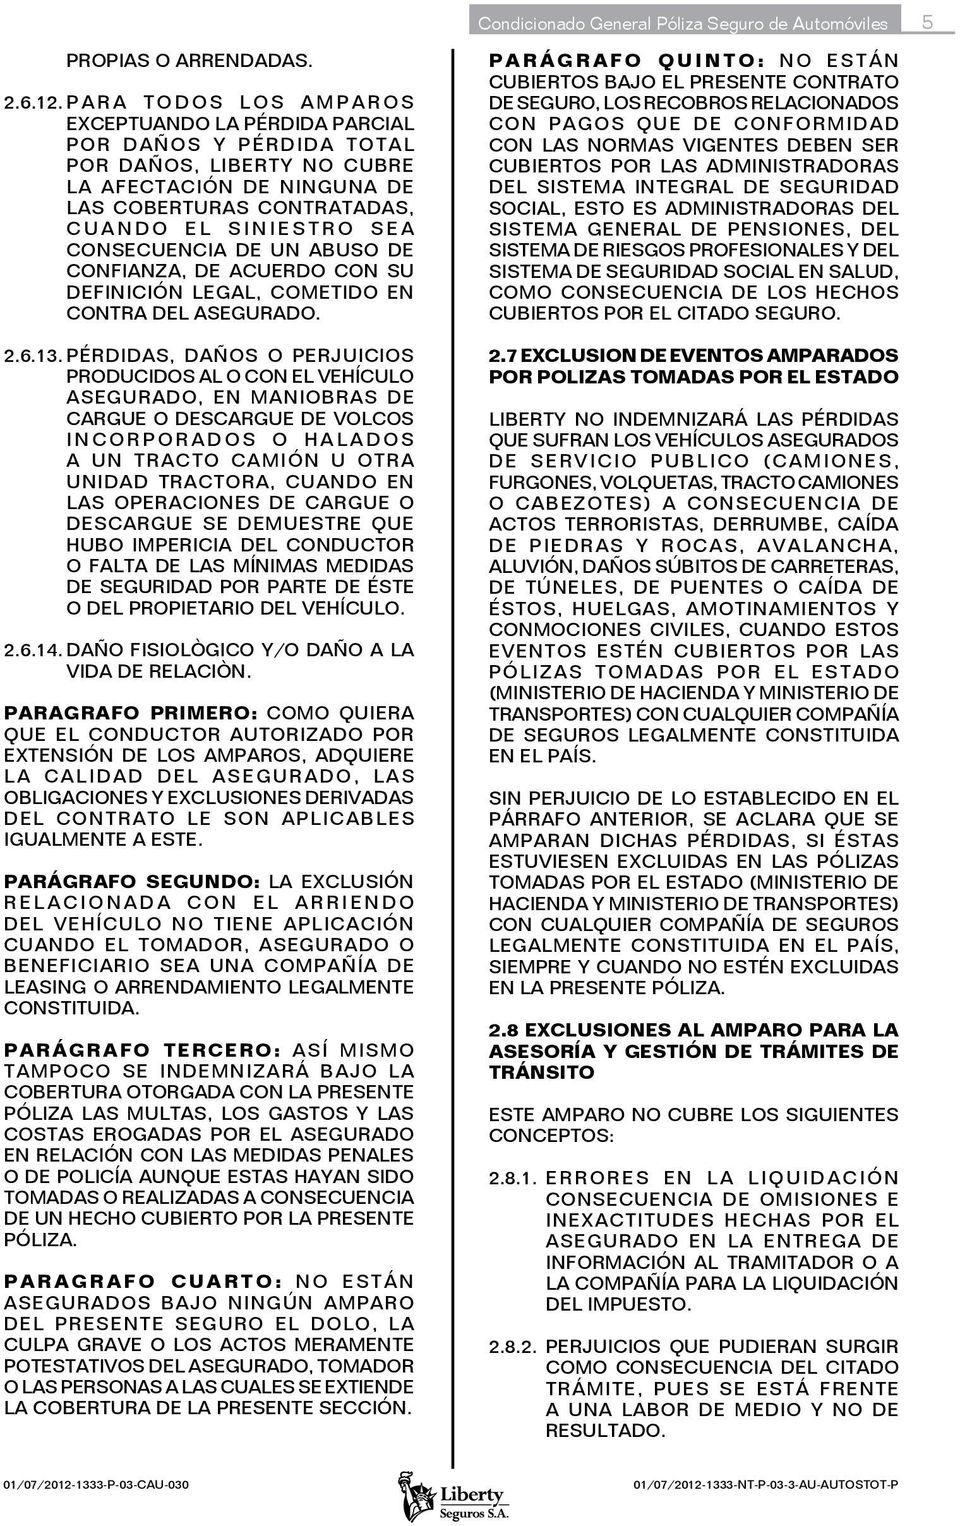 CONSECUENCIA DE UN ABUSO DE CONFIANZA, DE ACUERDO CON SU DEFINICIÓN LEGAL, COMETIDO EN CONTRA DEL ASEGURADO. 2.6.13.